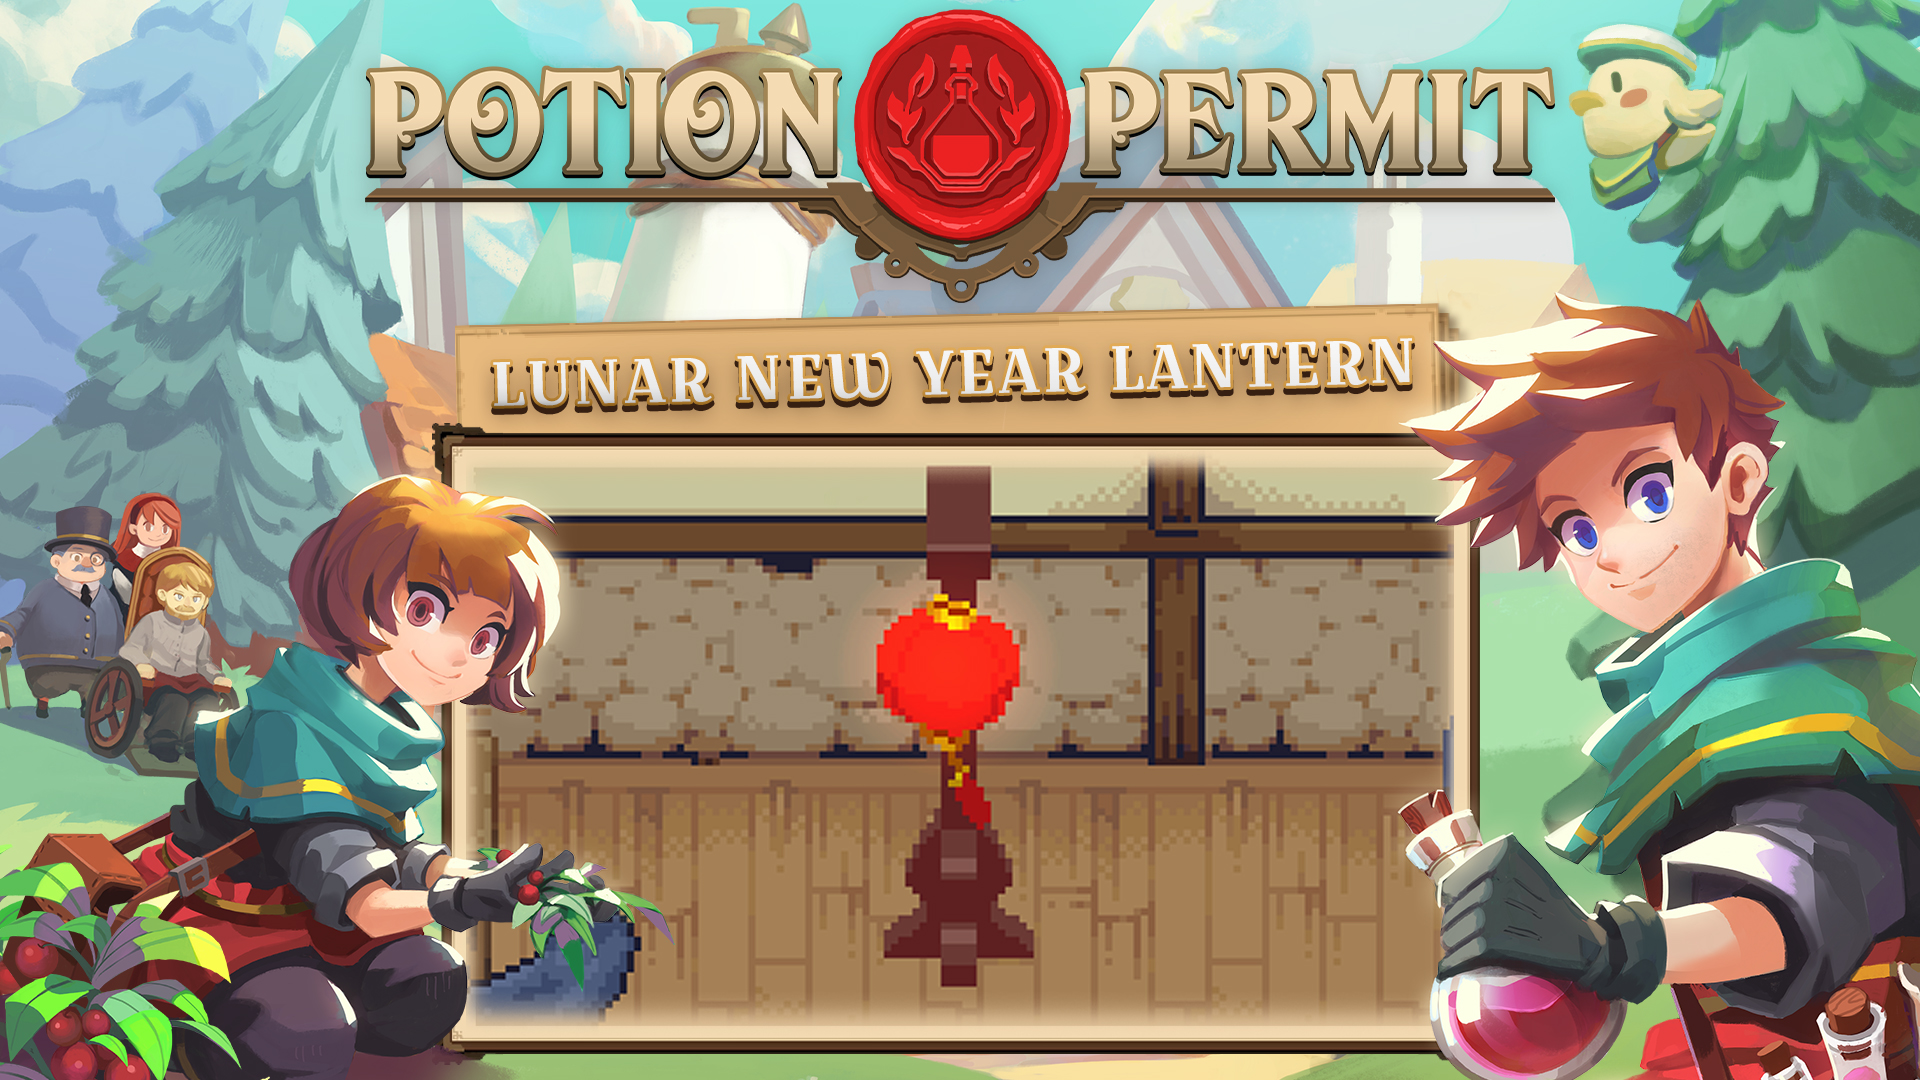 Potion Permit - Lunar New Year Lantern